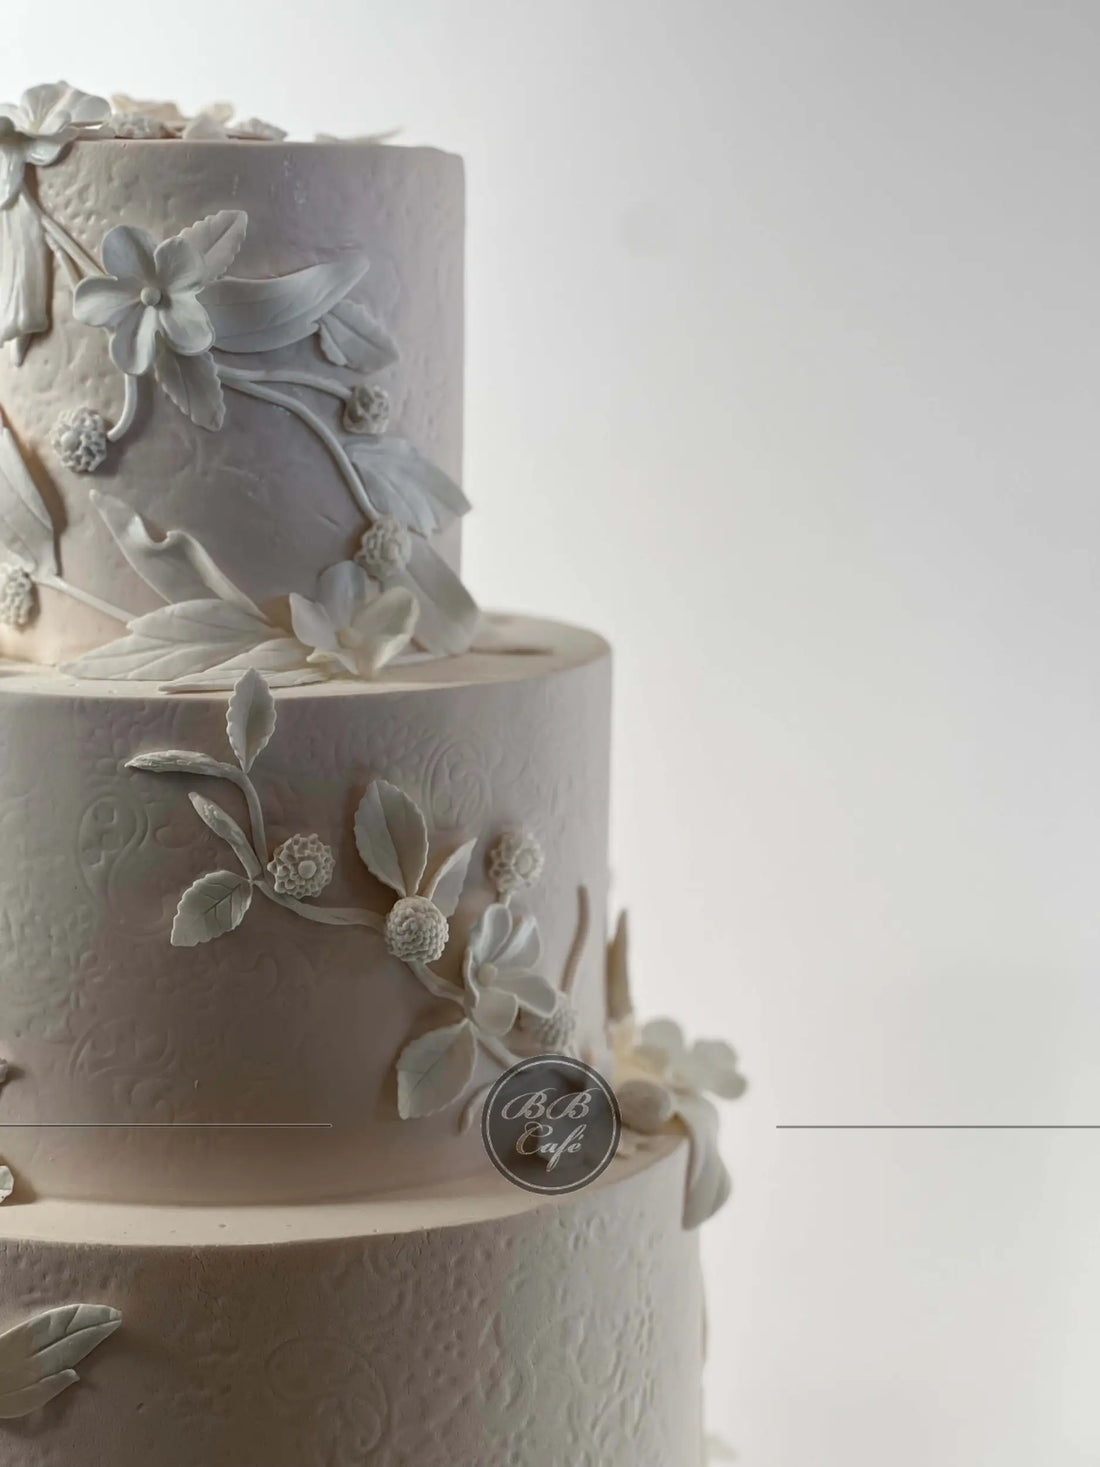 Buds &amp; blossoms - wedding cake